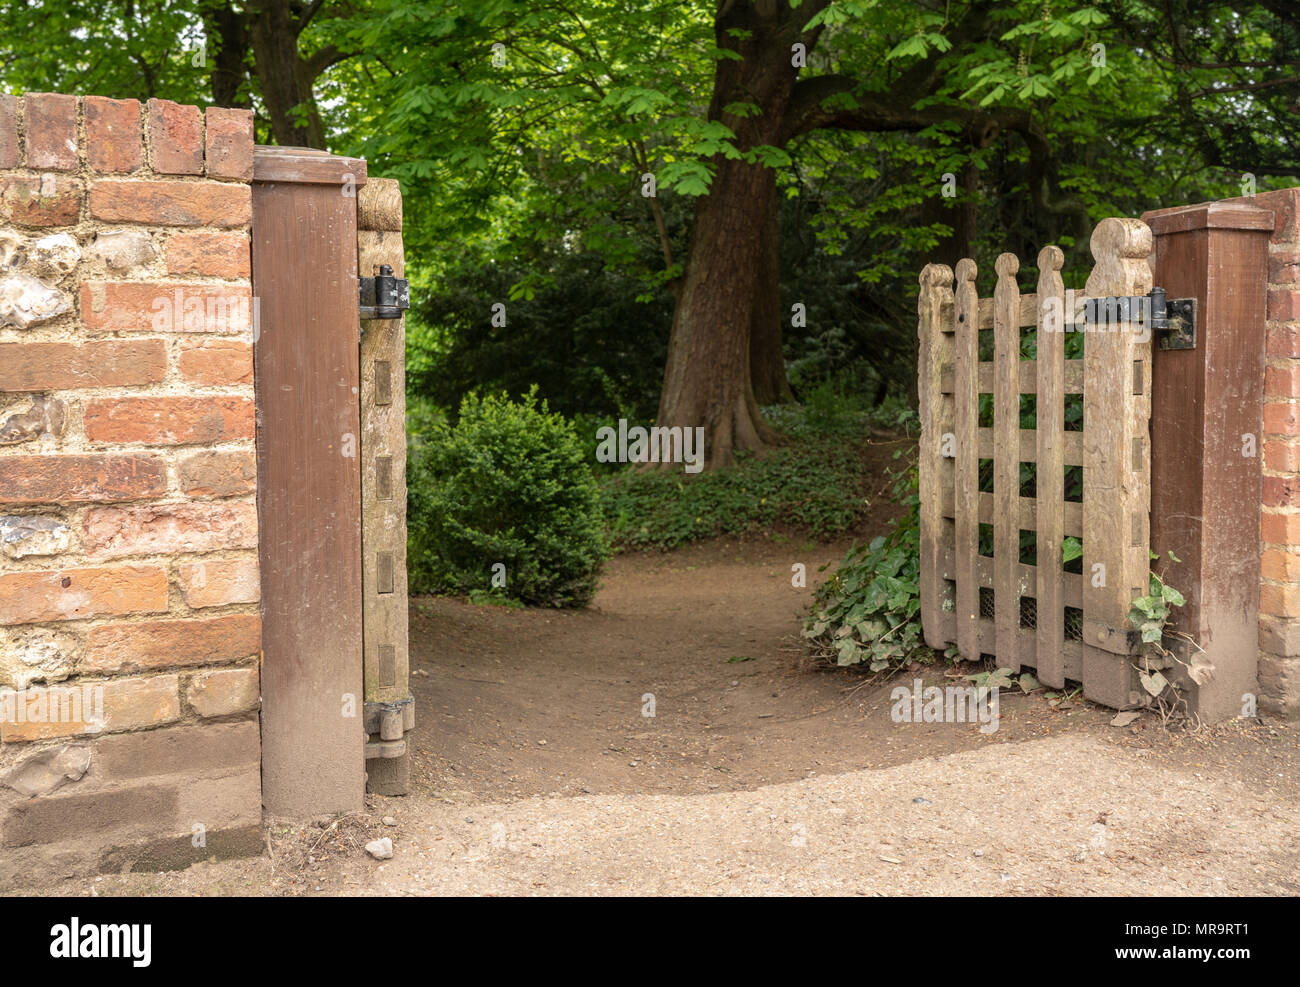 Holz- Gateway in geheimnisvollen Wald Weg Stockfoto